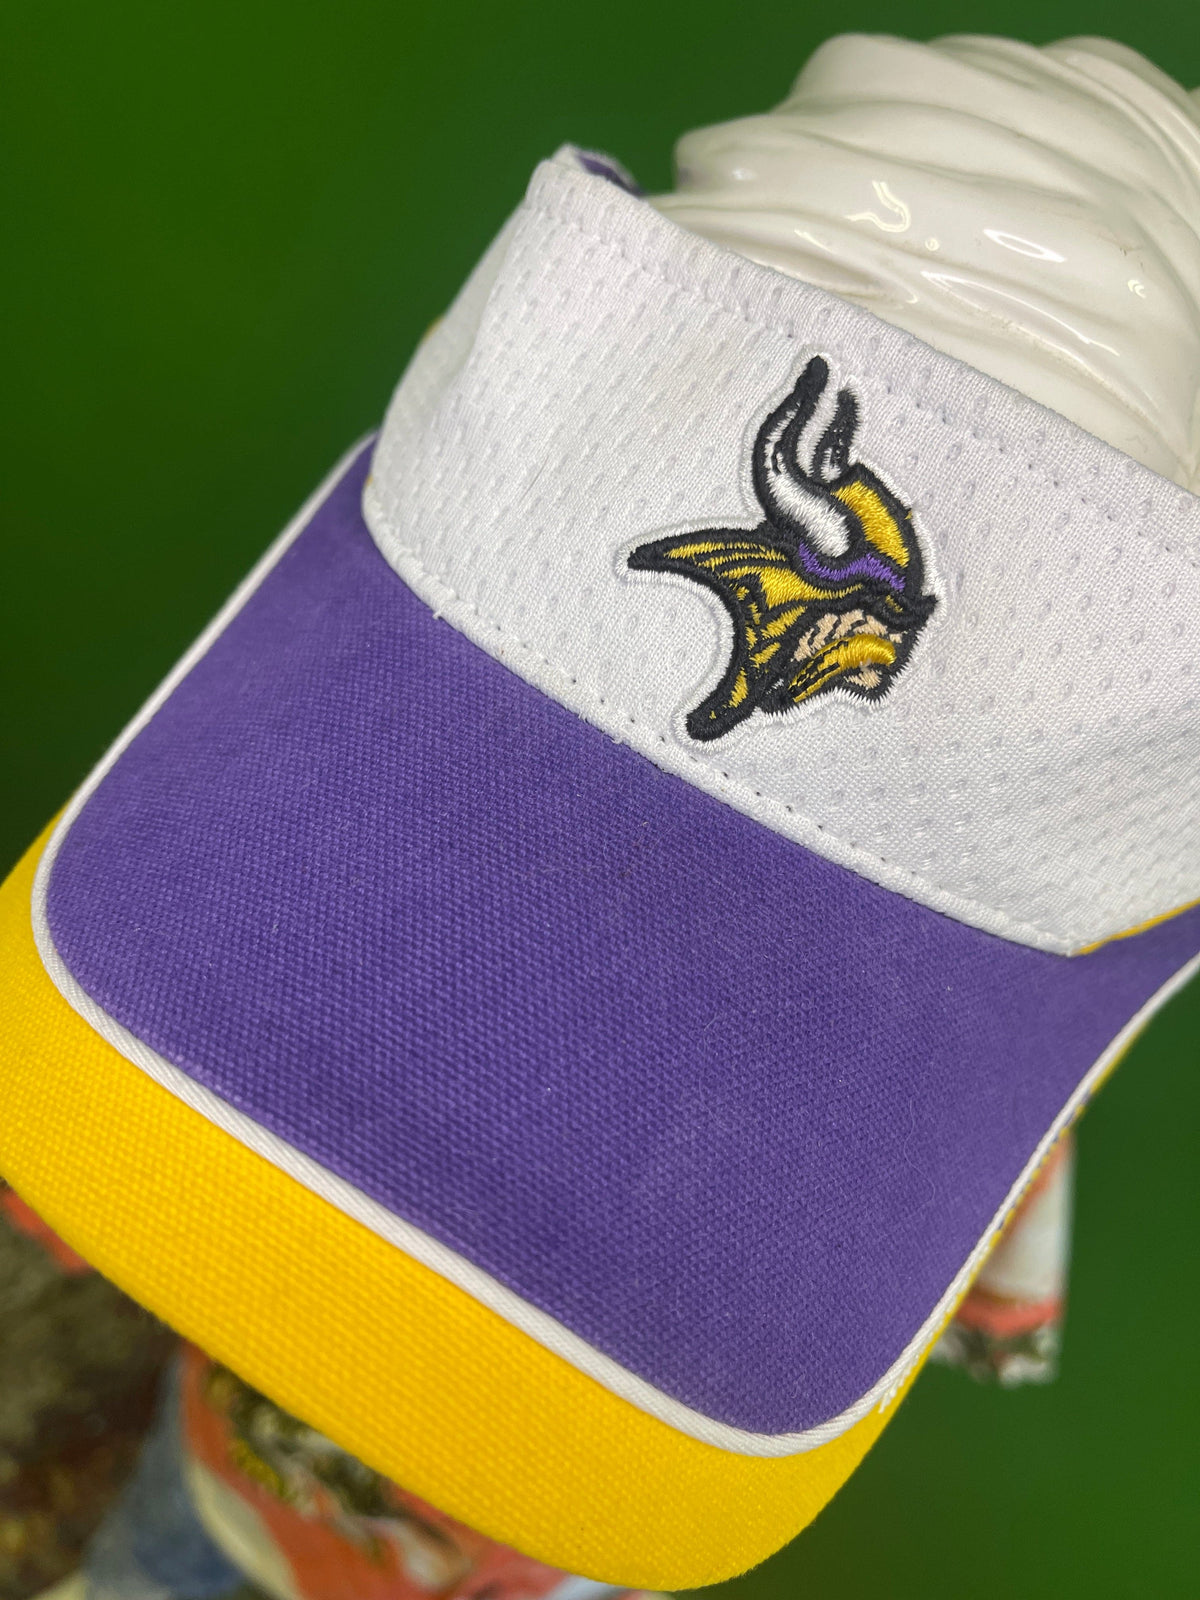 NFL Minnesota Vikings Reebok Adjustable Visor Hat OSFM